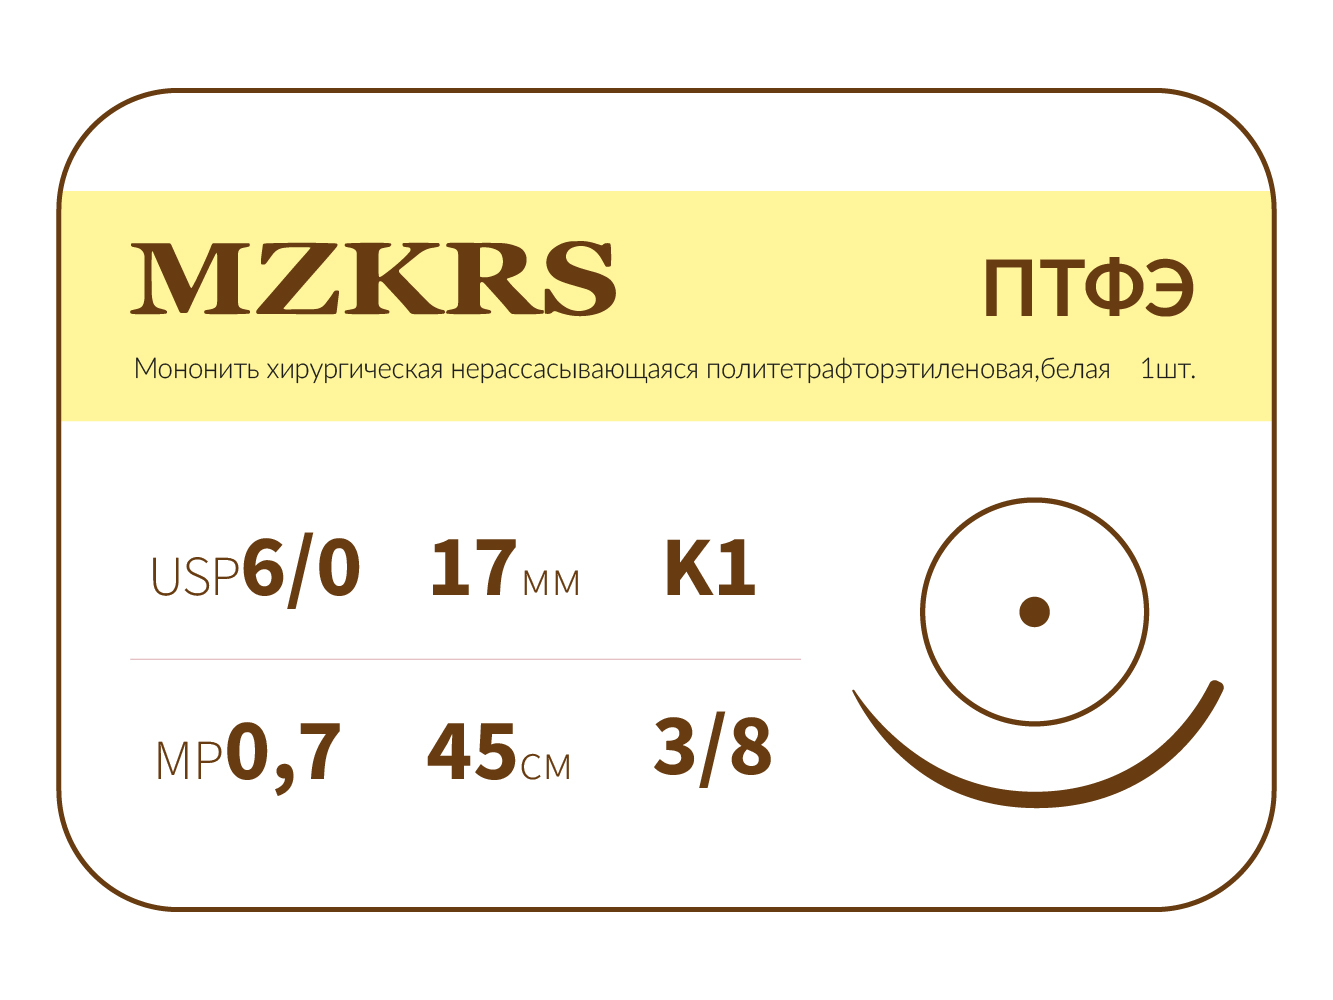 1738К-Premium 6/0 (0.7) 45 ПТФЭ хирургическая нить политетрафторэтиленовая, MZKRS (Россия)